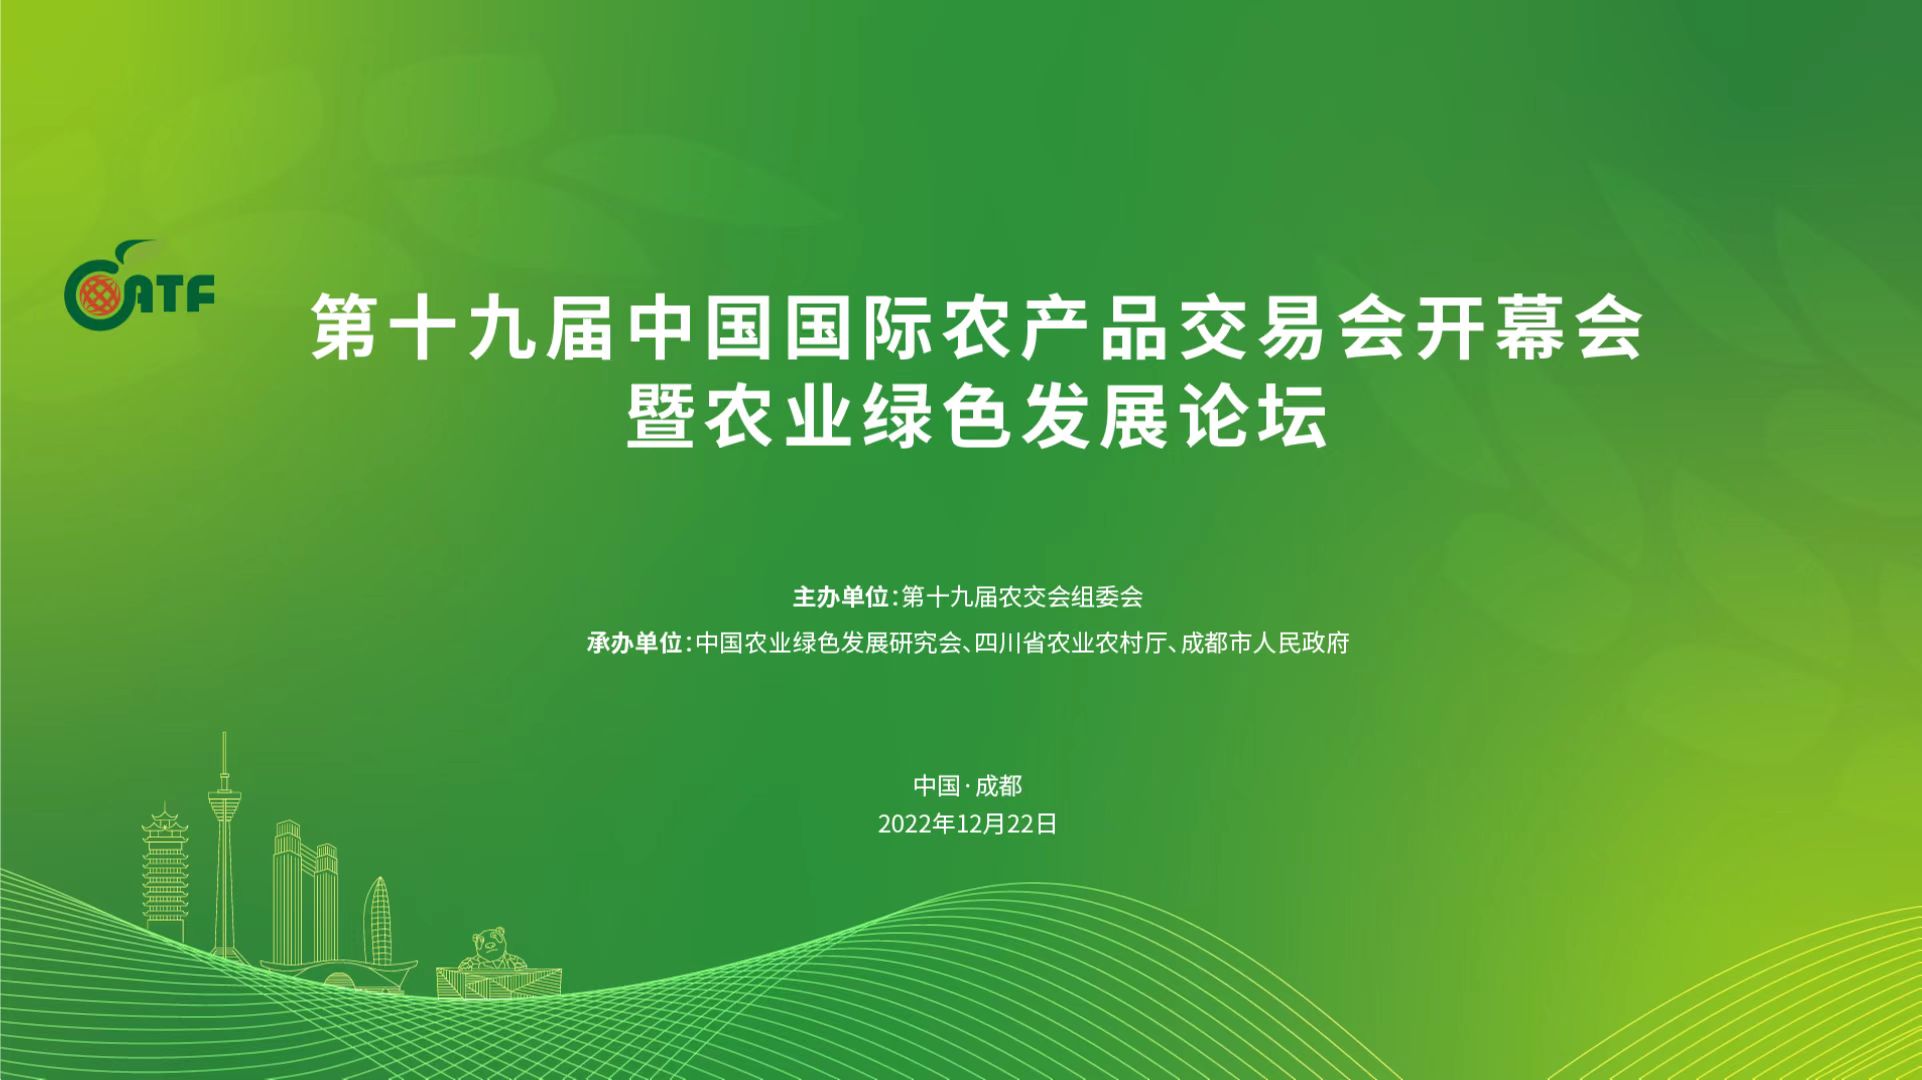 第十九届中国国际农产品交易会开幕式暨农业绿色发展论坛活动时间